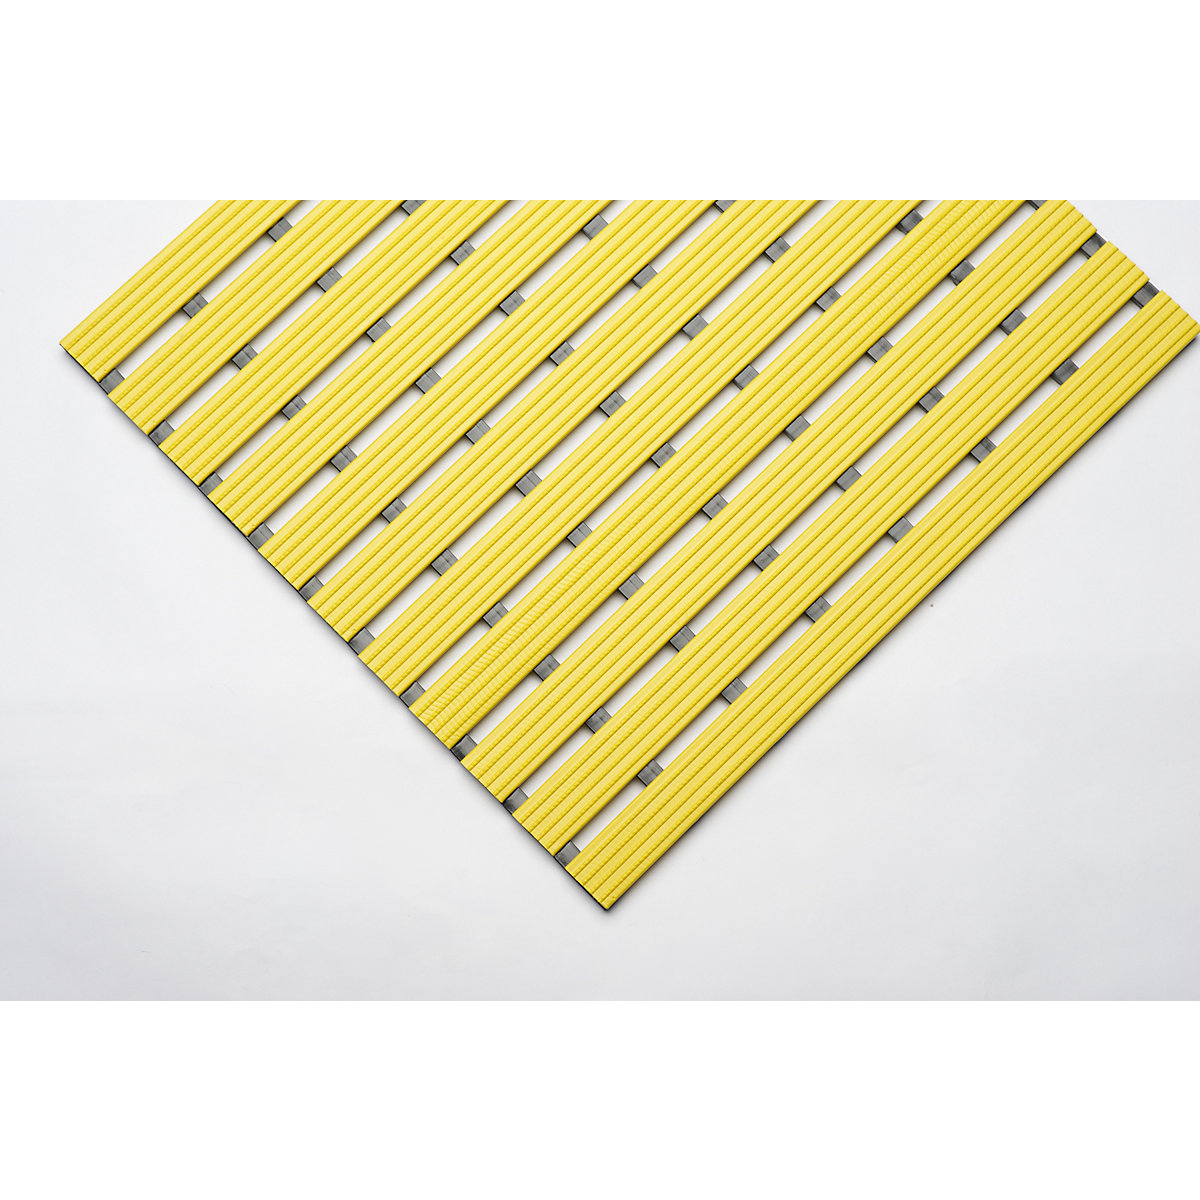 Esteira de perfil em PVC, por metro corrente, superfície de movimento em PVC duro, antiderrapante, largura 600 mm, amarelo